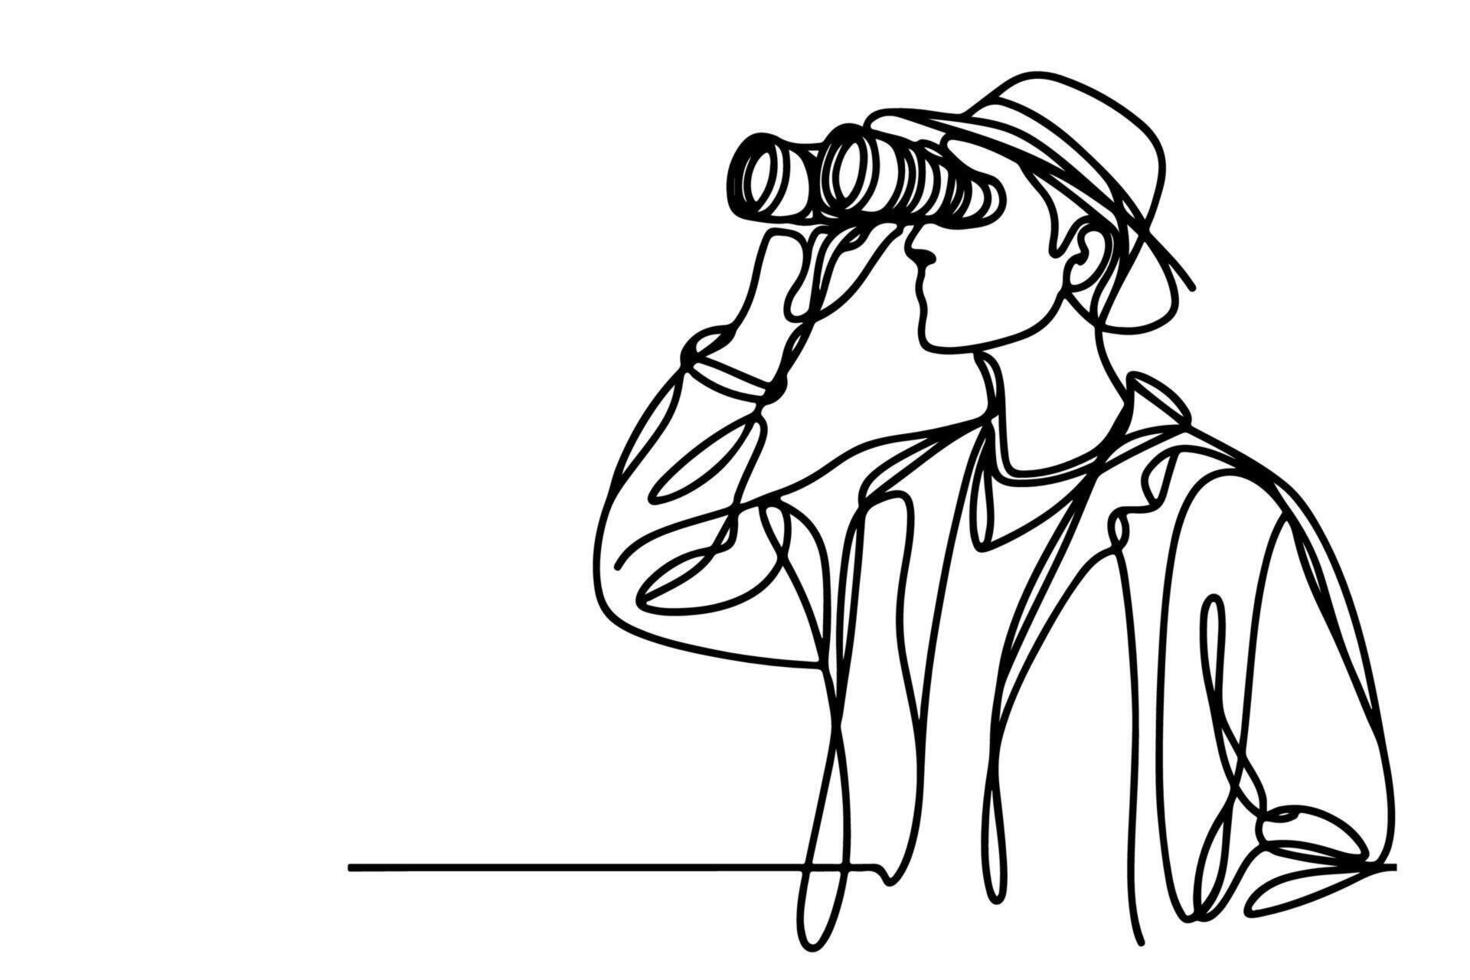 uno continuo negro línea mano dibujo de viajero hombre de pie, participación binocular y mirando dentro distancia con prismáticos lineal bosquejo garabatear en blanco antecedentes vector